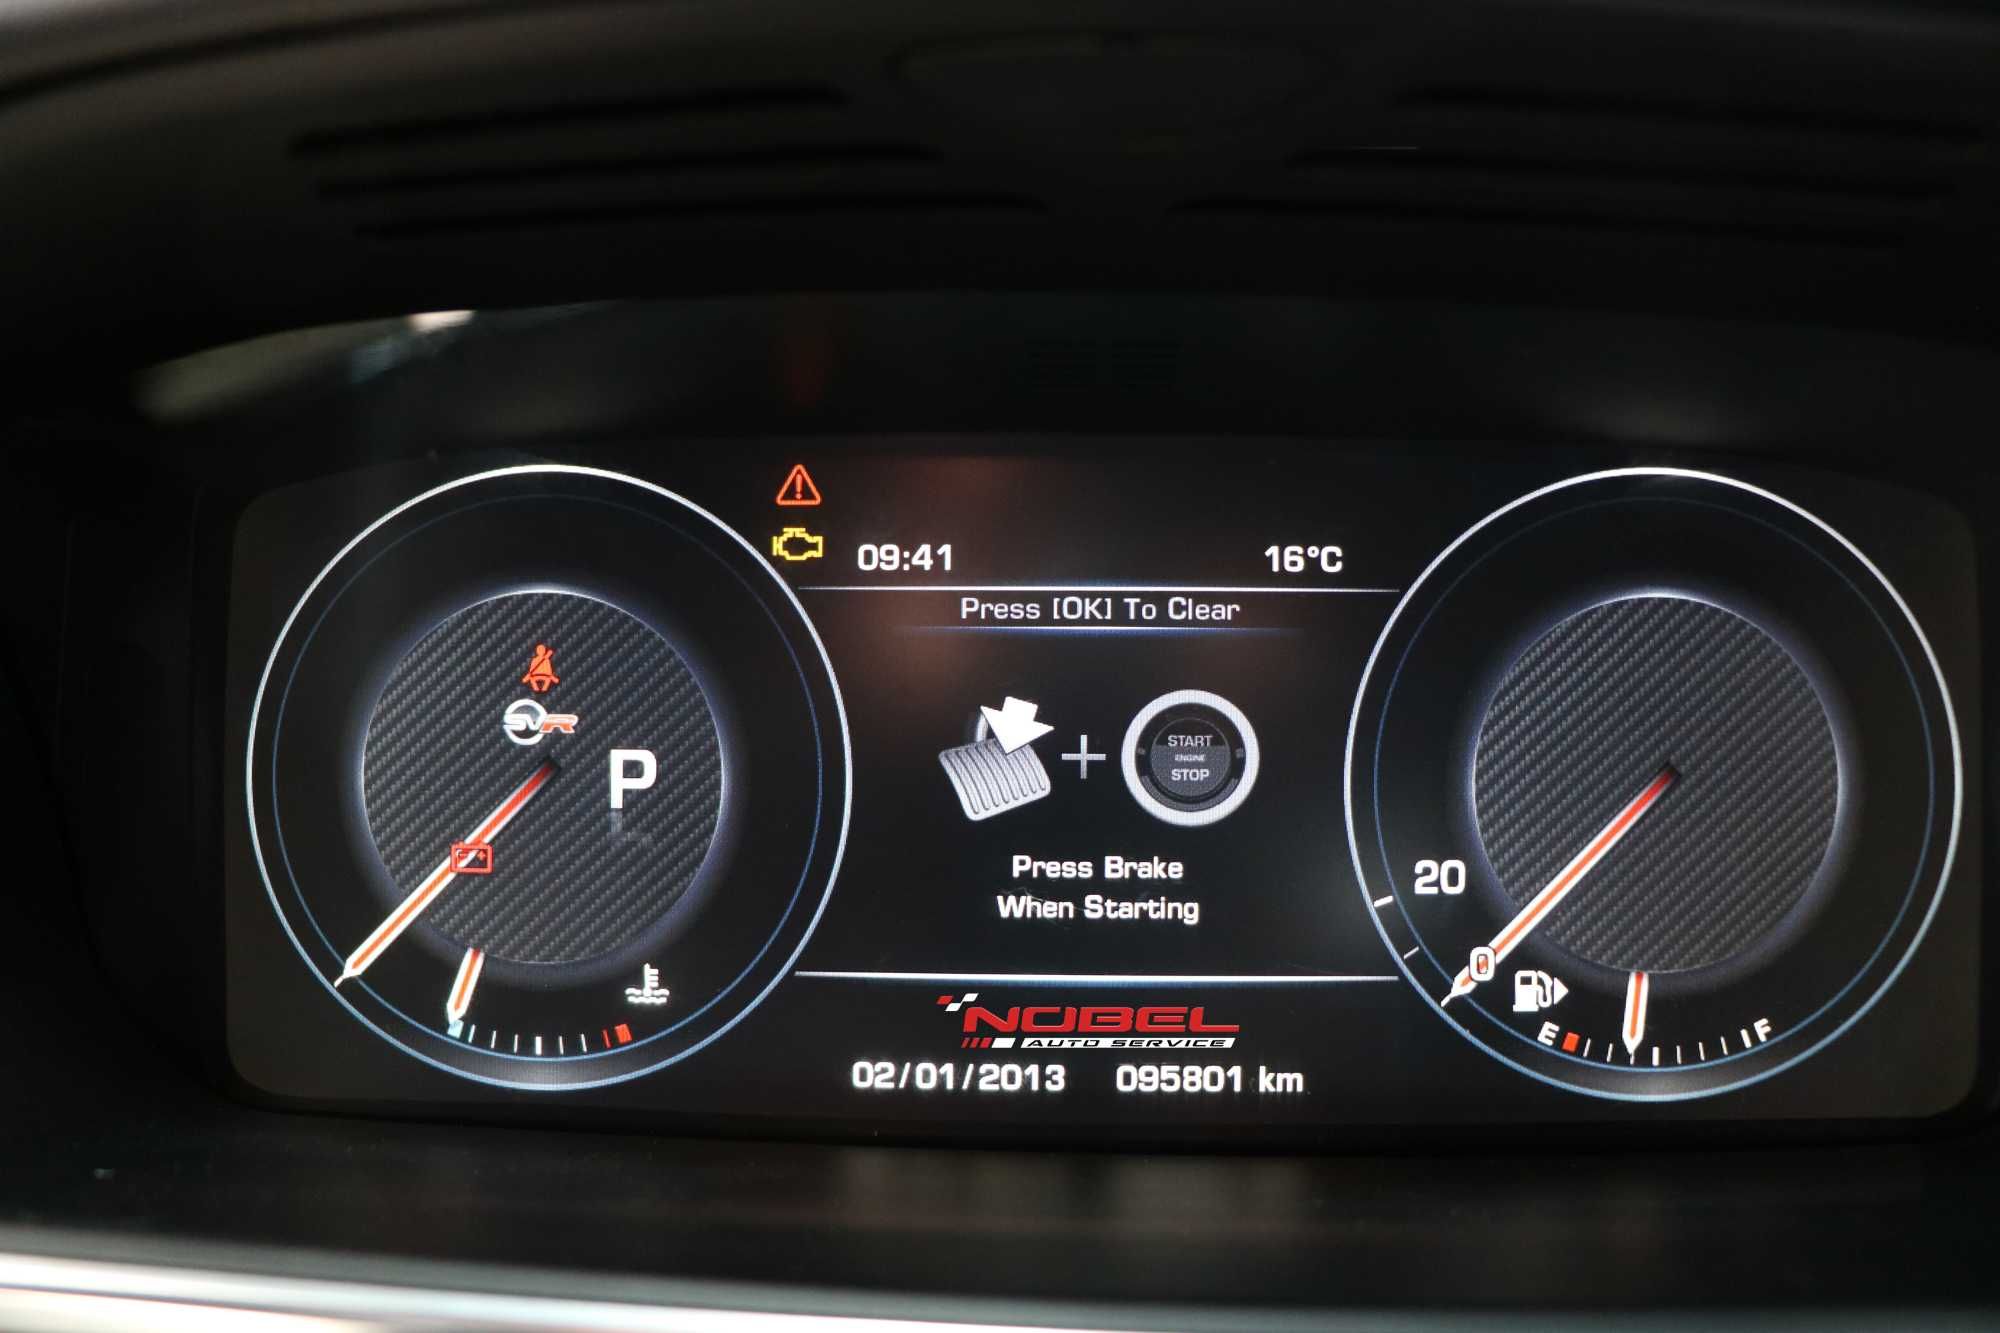 Retrofit ceasuri de bord analog la digital Mercedes Benz Land Rover